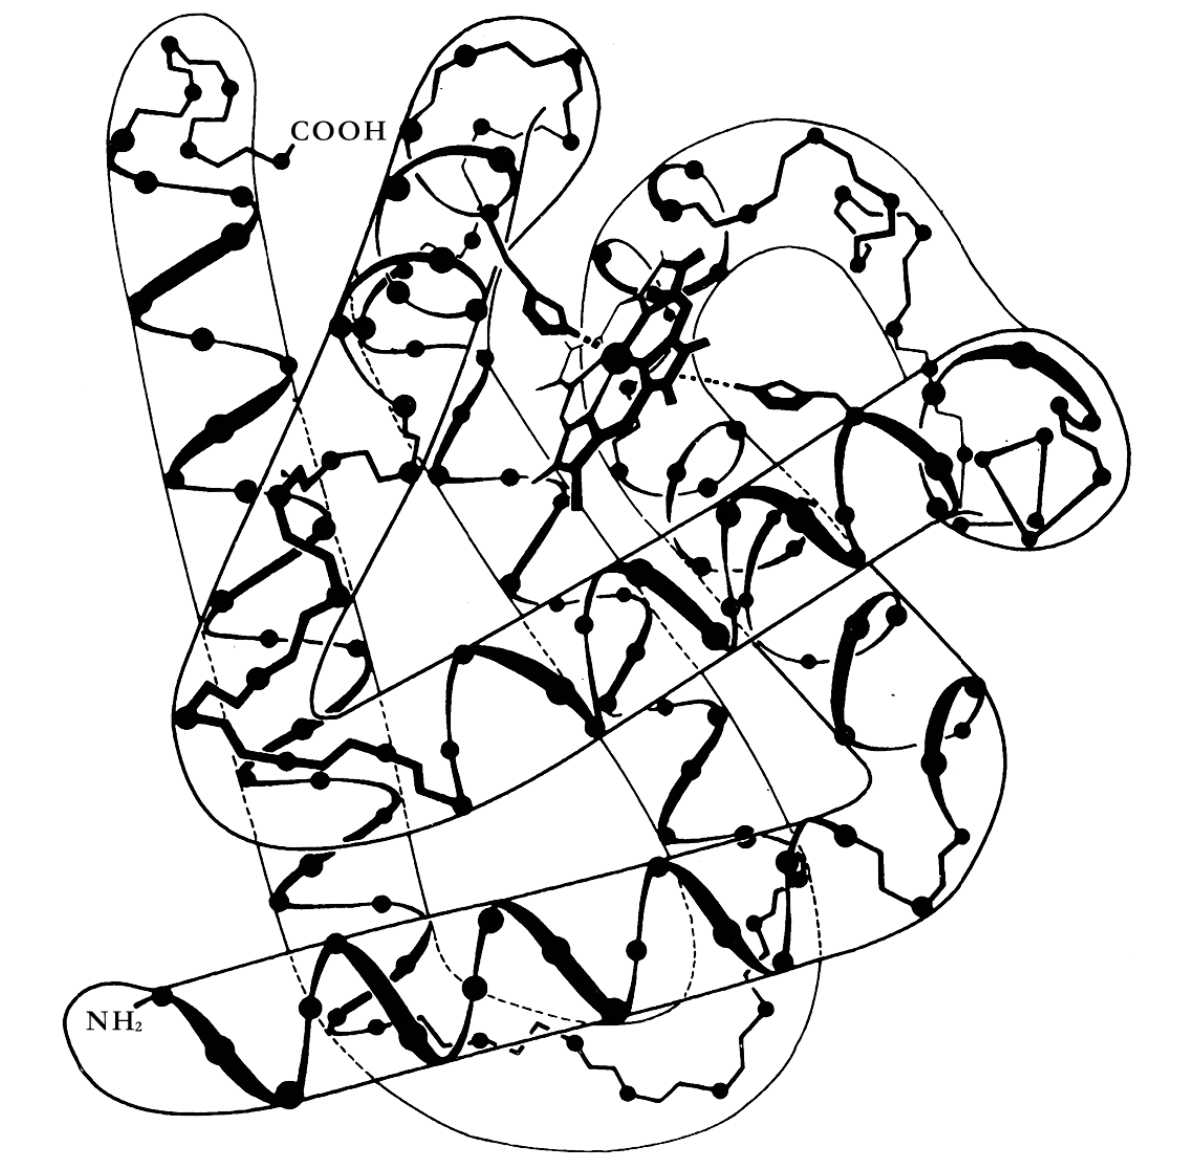 从一些高分辨率的X光资料推断出的肌红蛋白的结构。大尺寸的“扭曲管道”形状是三级结构，内部的细螺旋——“阿尔法 螺旋”——是二级结构。